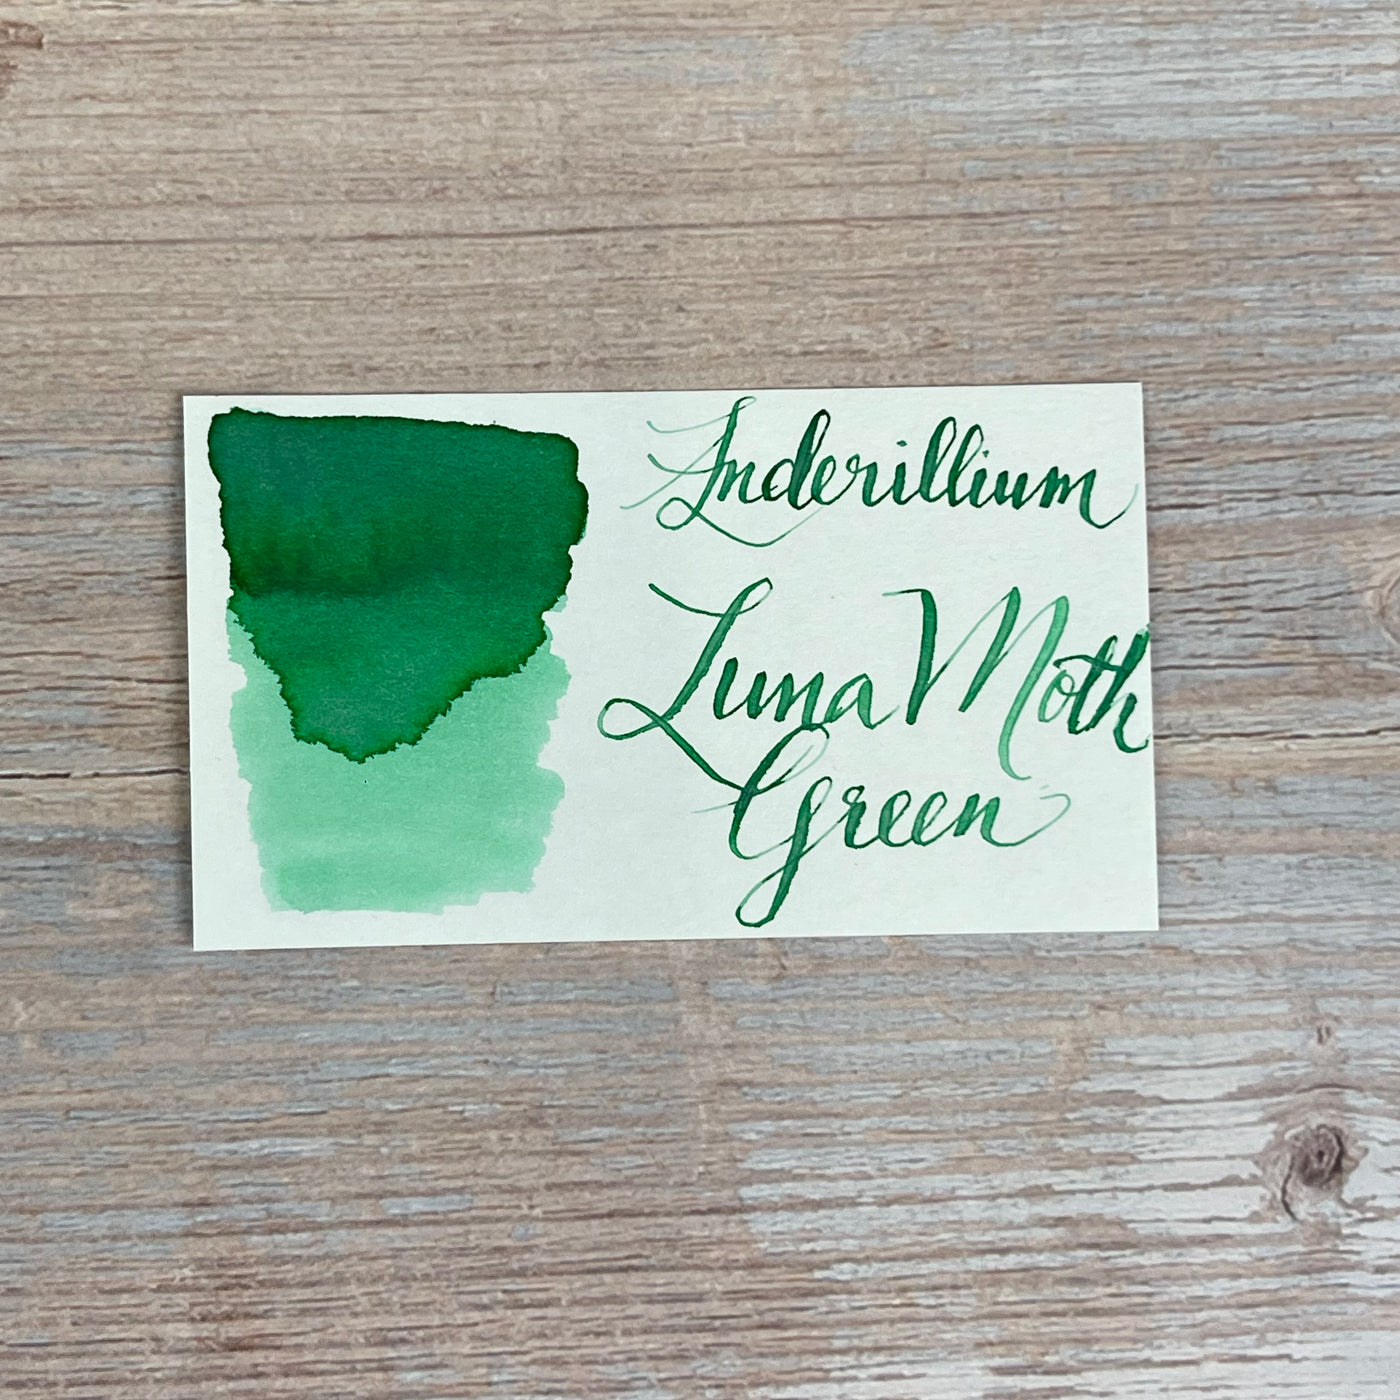 Anderillium Luna Moth Green - 1.5 Oz Bottled Ink